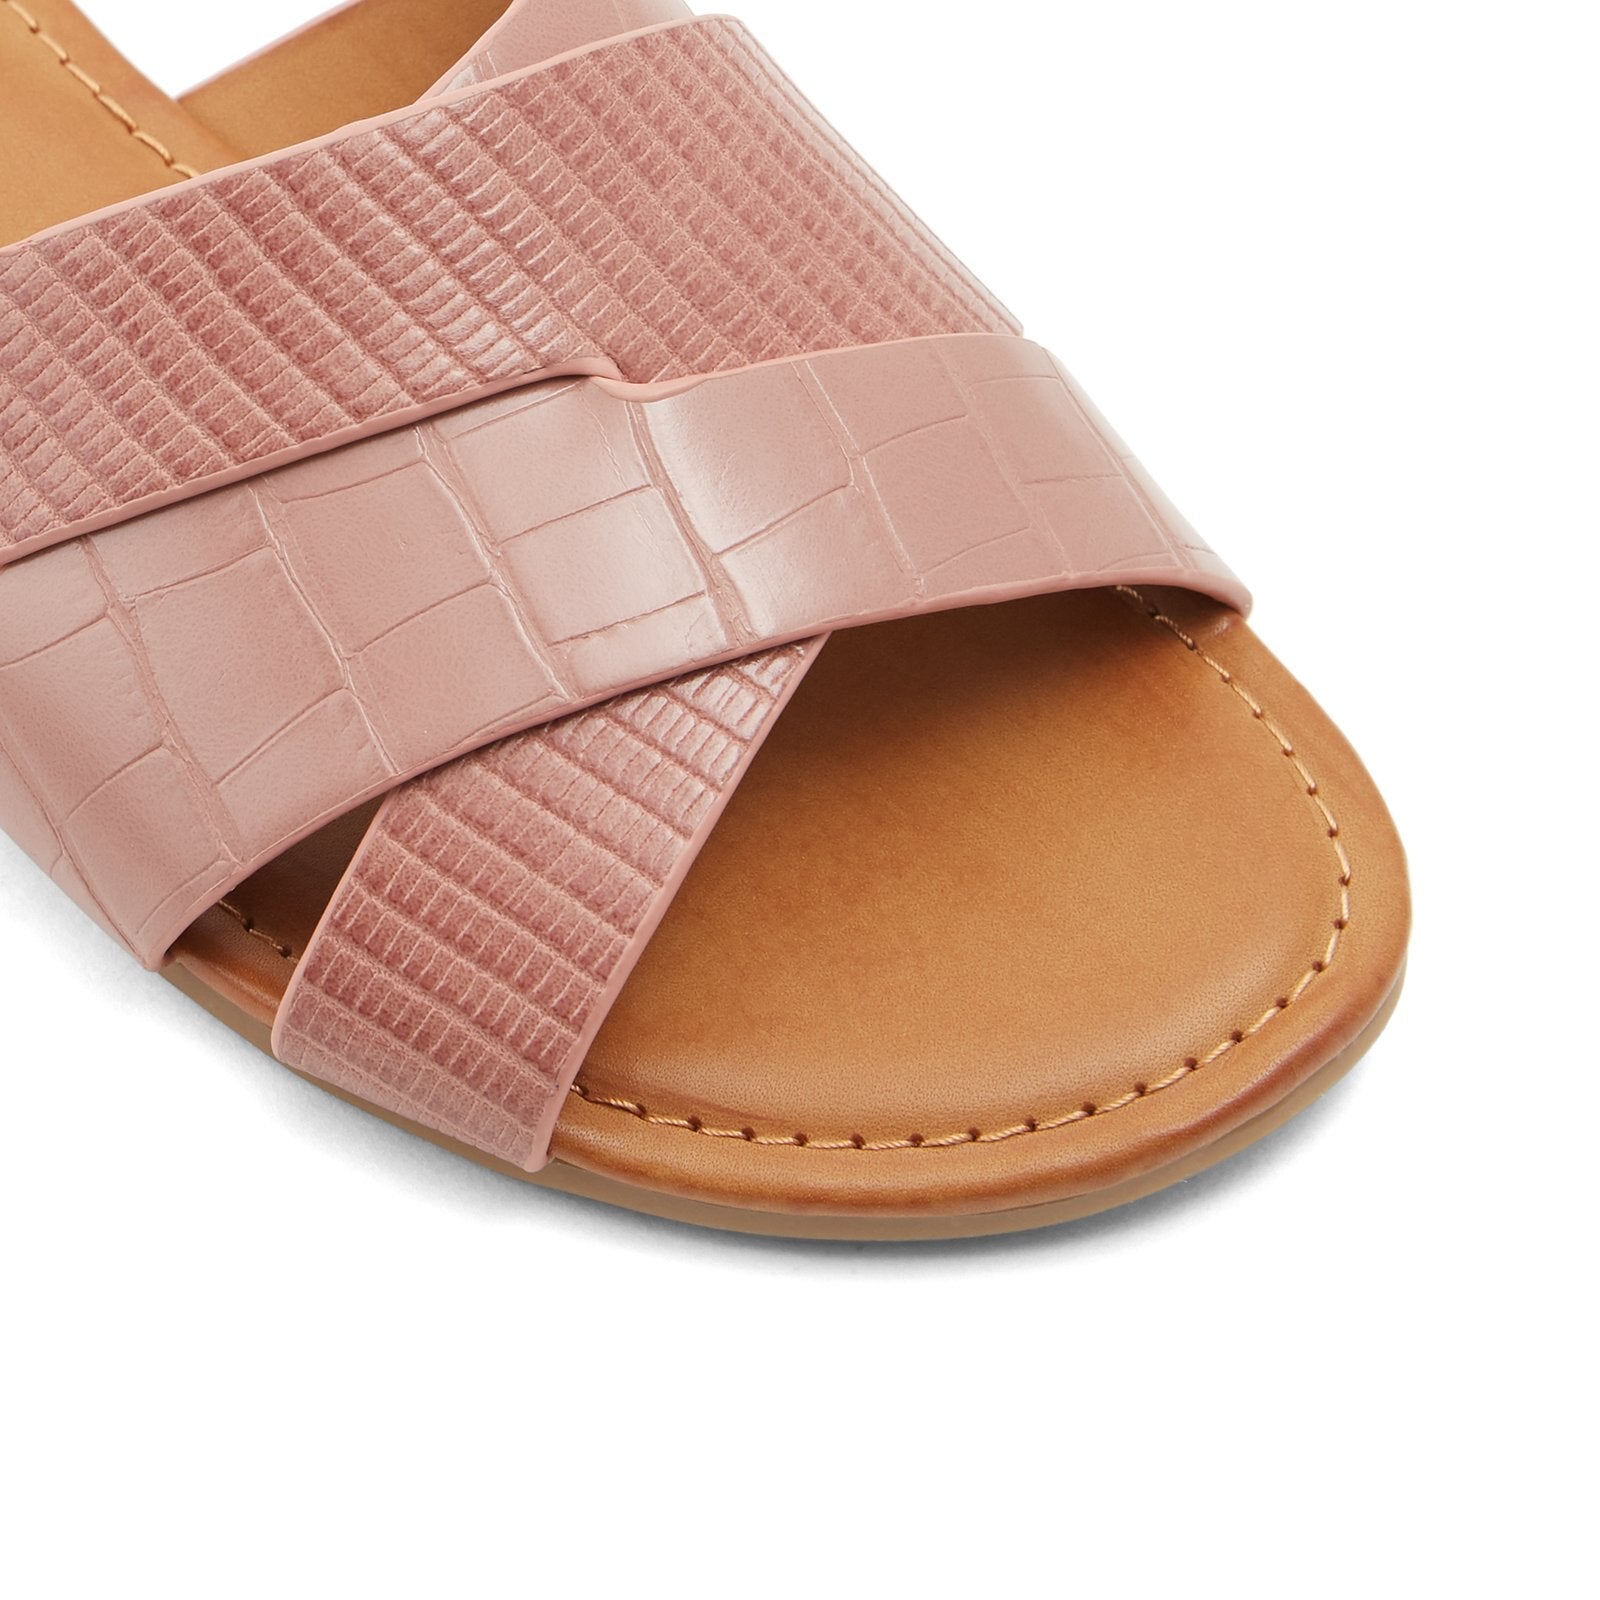 BILLIE Women Shoes - DARK BEIGE - CALL IT SPRING KSA